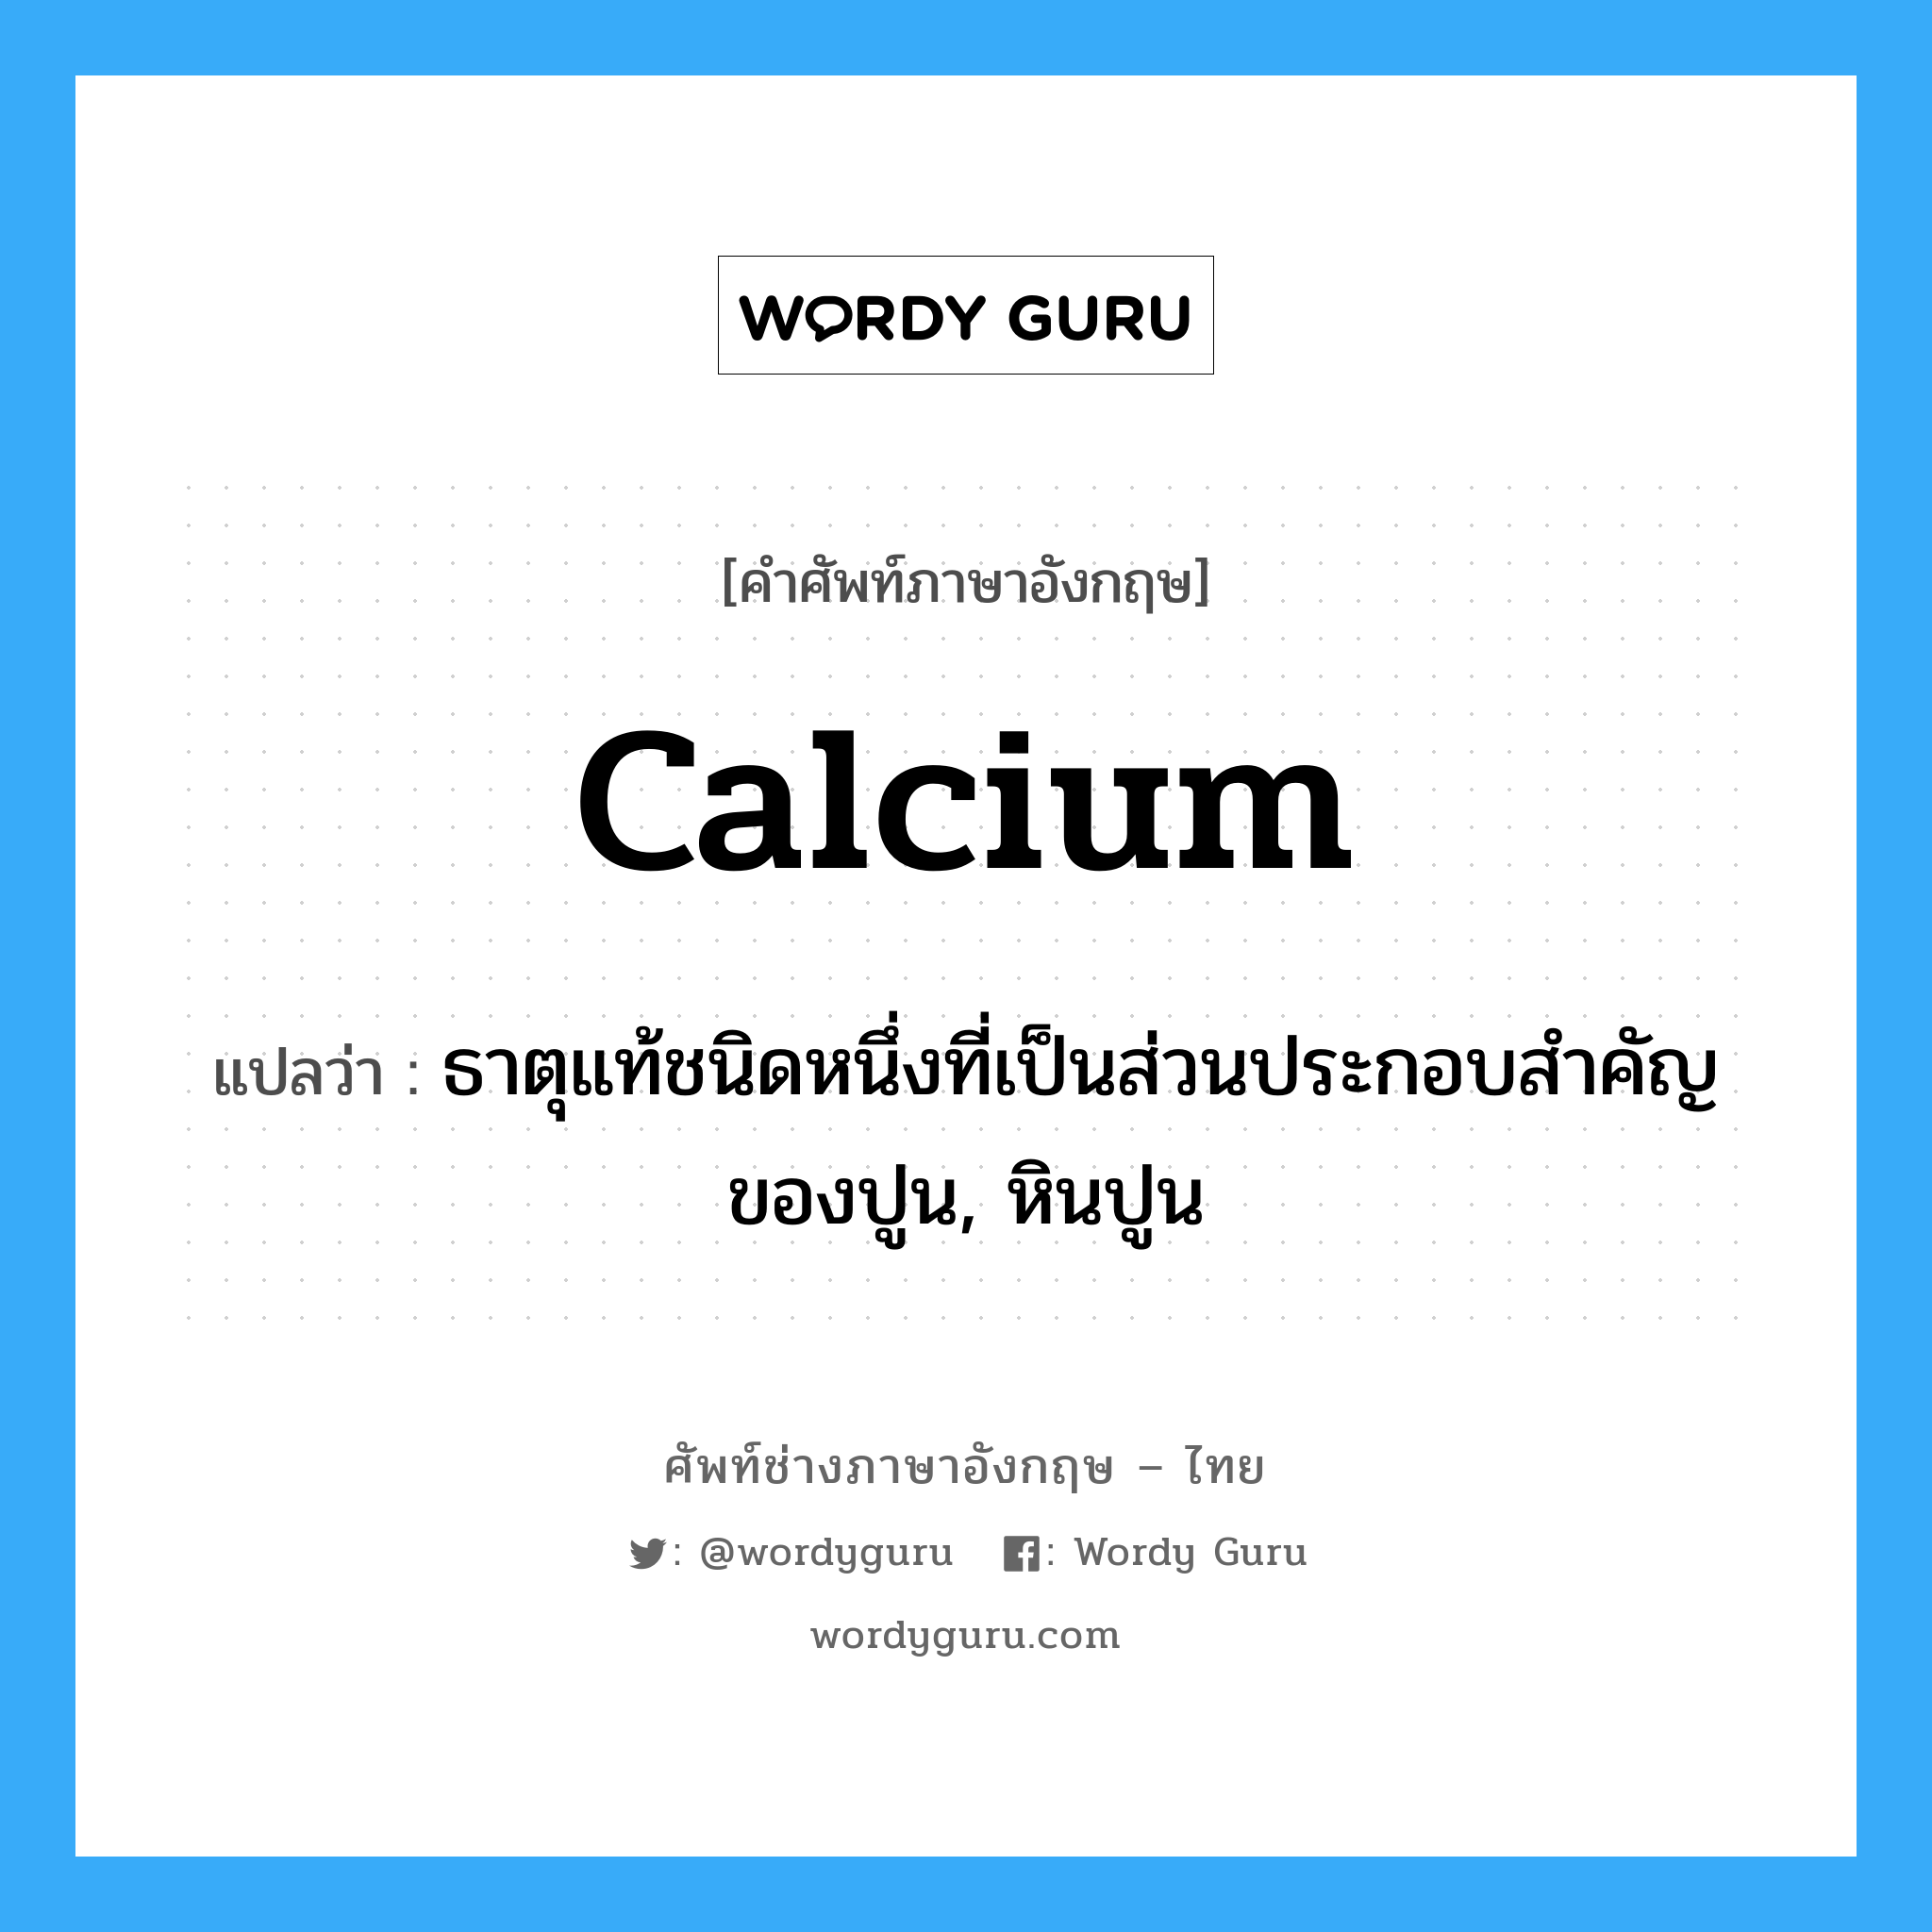 calcium แปลว่า?, คำศัพท์ช่างภาษาอังกฤษ - ไทย calcium คำศัพท์ภาษาอังกฤษ calcium แปลว่า ธาตุแท้ชนิดหนึ่งที่เป็นส่วนประกอบสำคัญของปูน, หินปูน